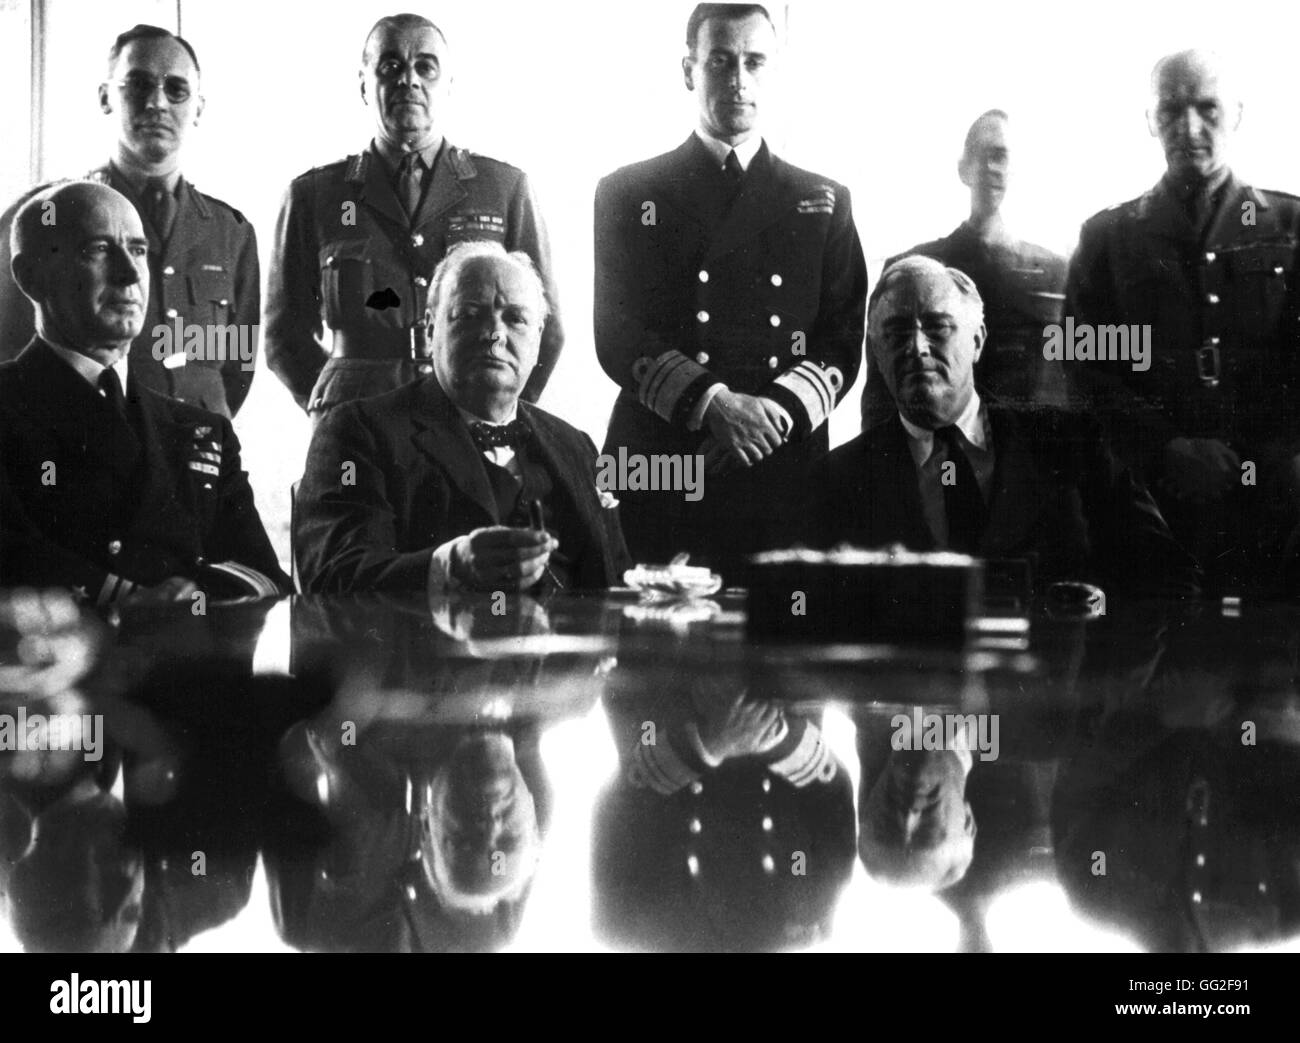 Casablanca-Konferenz (14. Januar 1943). Churchill, Roosevelt, Sir Hastings Ismay (2. v. l.), lord Mountbatten (3. v. l.) und Sir John Dill (auf das R.) 14. Januar 1943 Marokko - Weltkrieg-Washington. Library of Congress Stockfoto